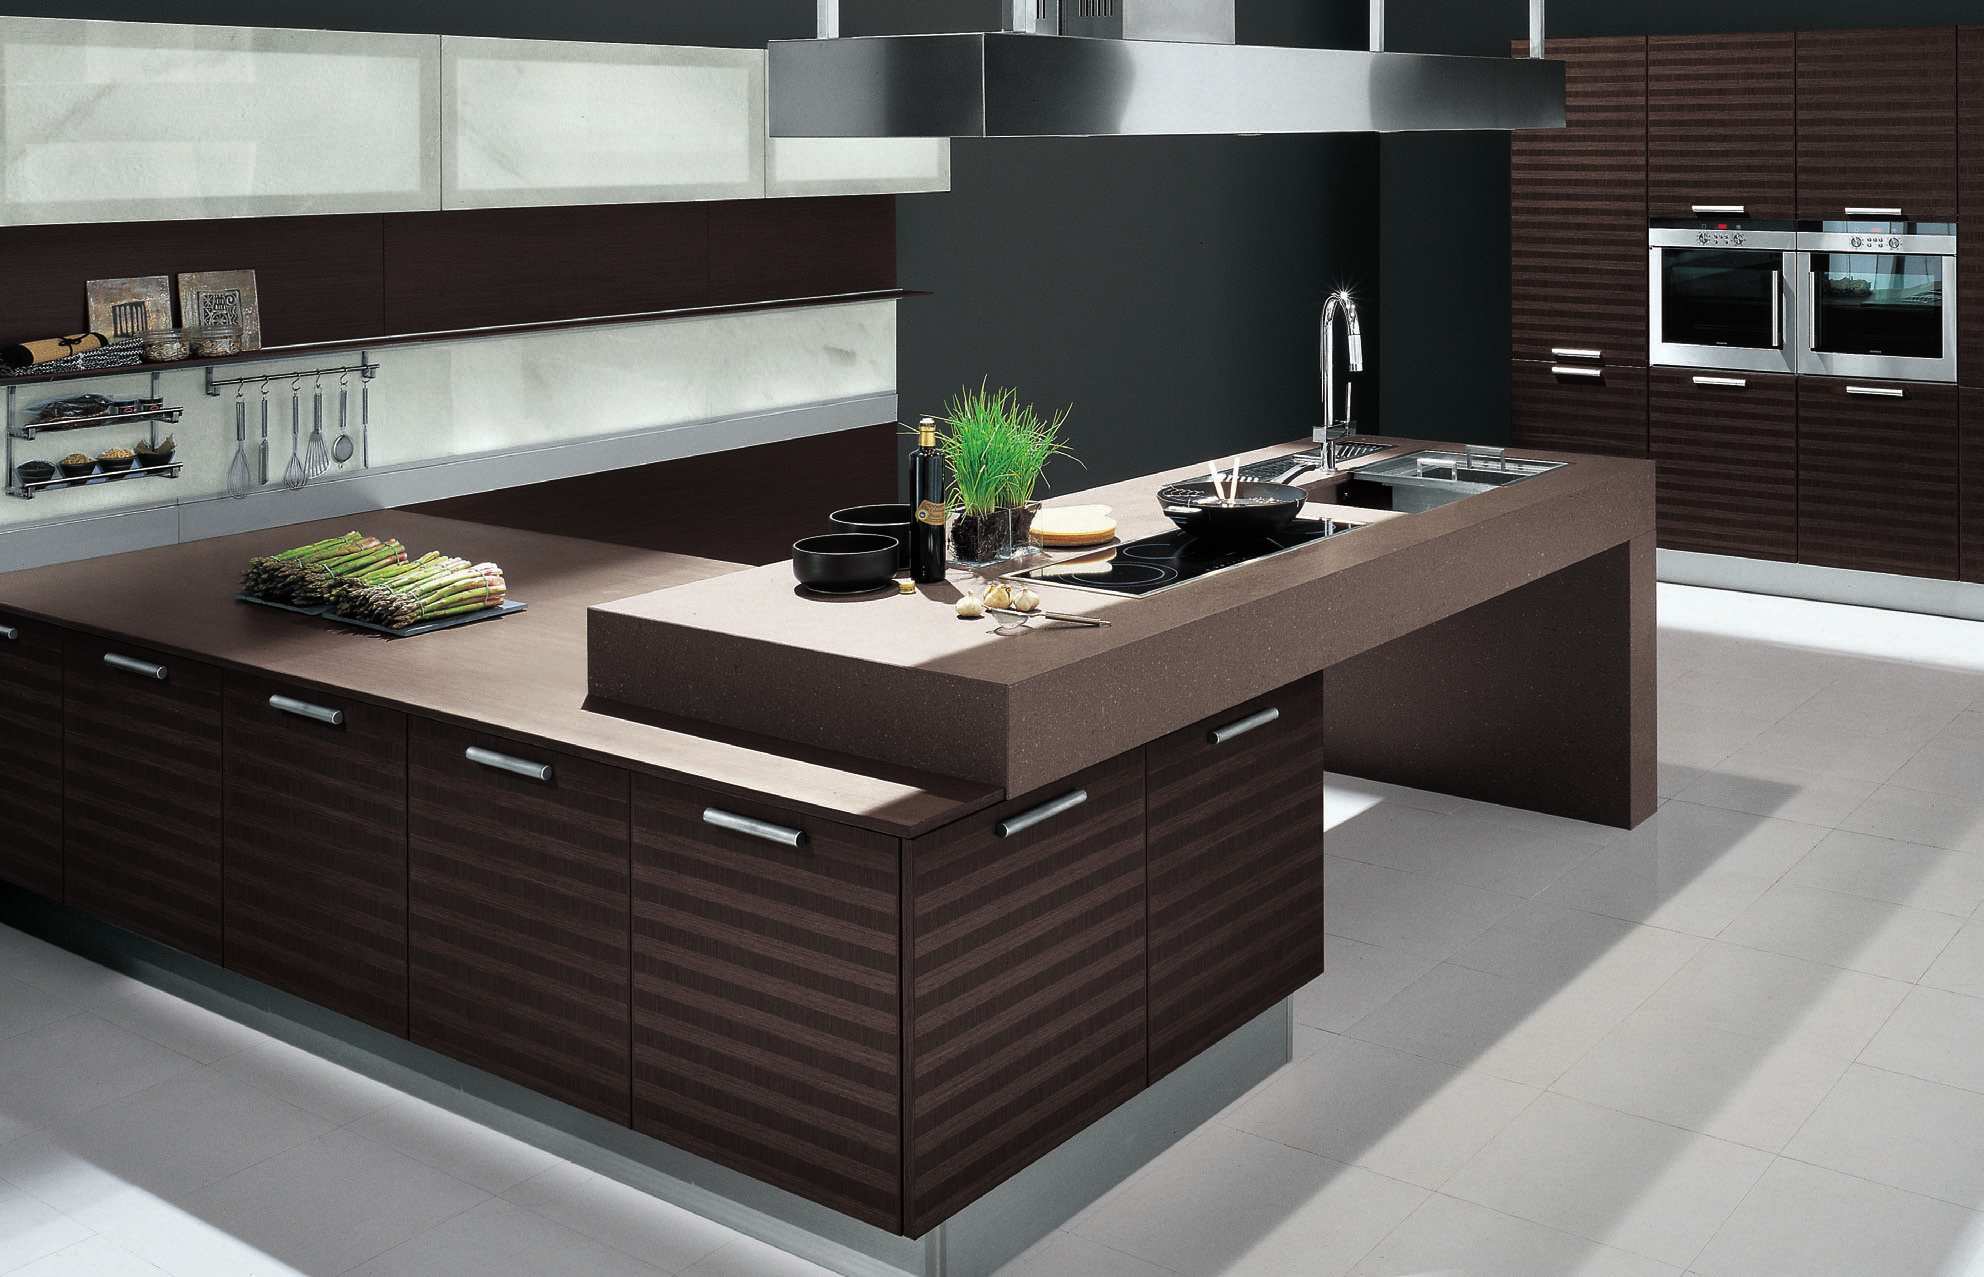 modern-kitchen-design-eas-home-design-decorating-and-interior-kitchen-photo-modern-kitchen-design-ideas.jpg